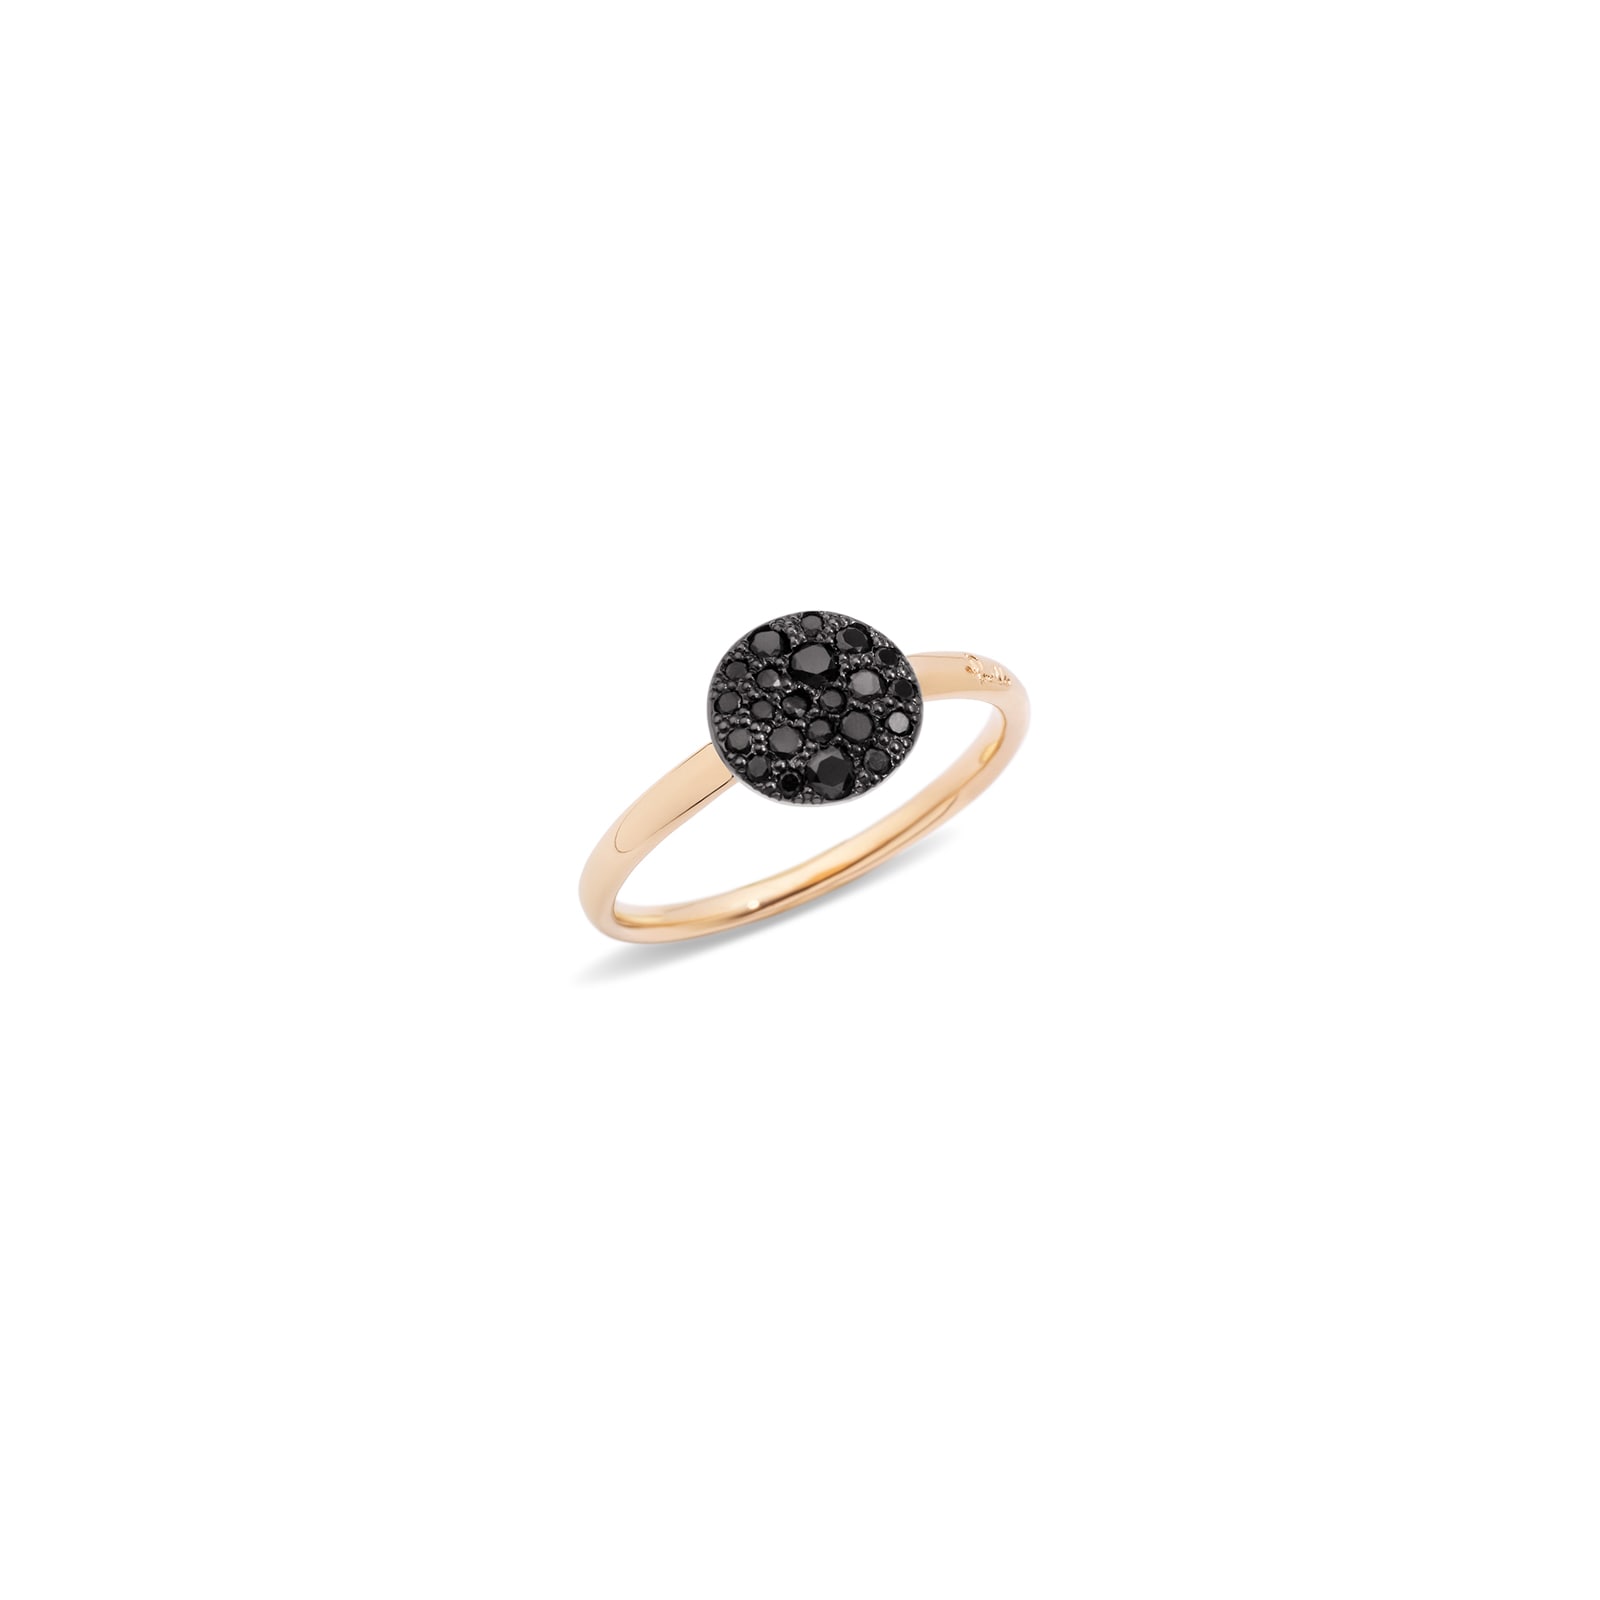 Sabbia 18ct Rose Gold 0.30ct Brushed Black Diamond Ring - Ring Size N